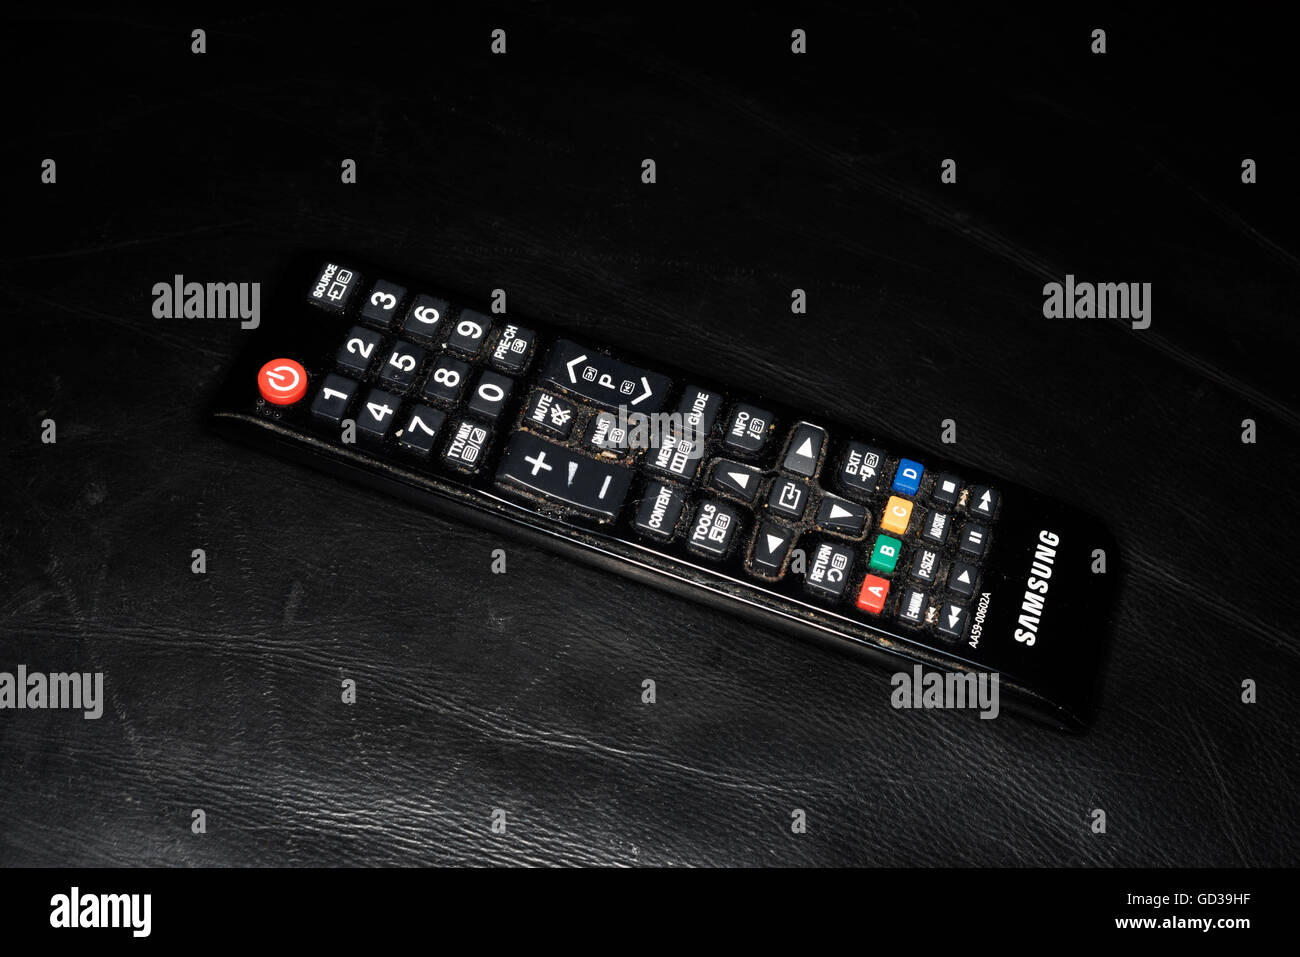 Samsung telecomando TV sul divano in pelle nera Foto Stock